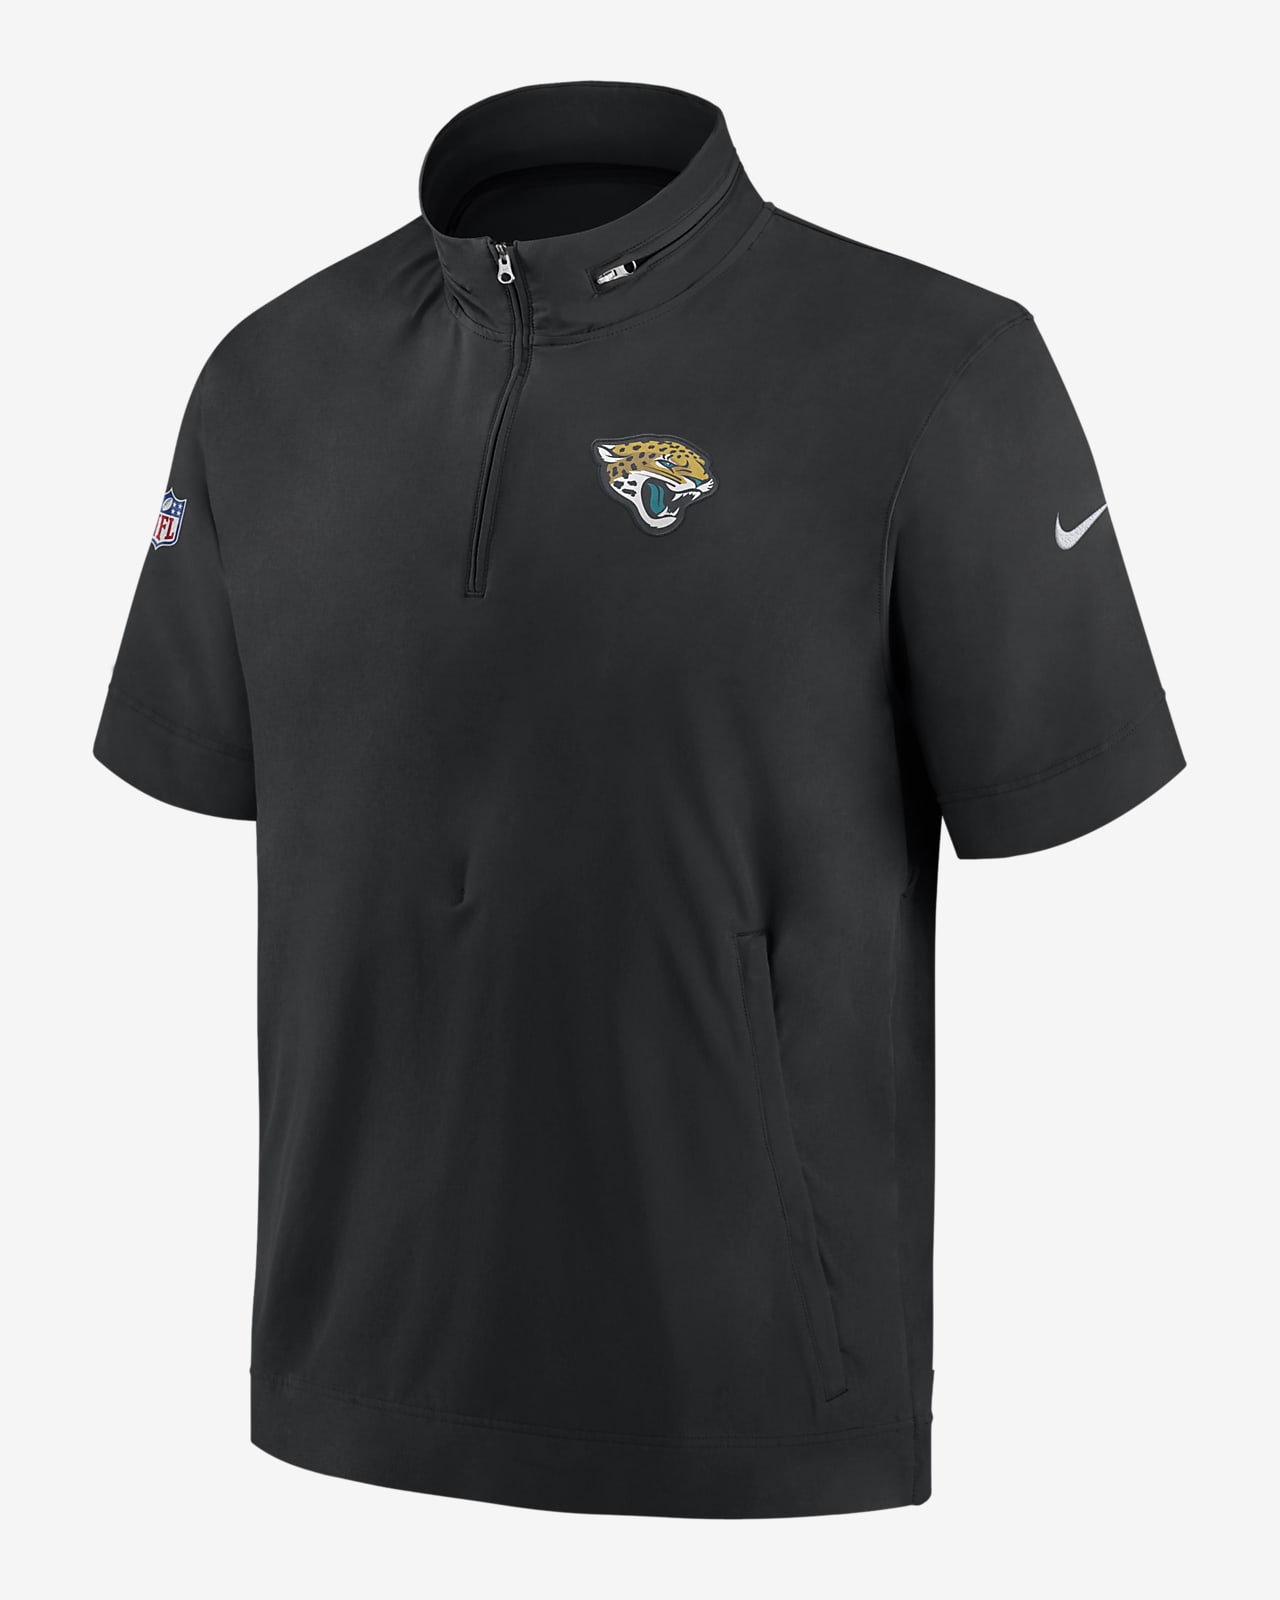 Nike Sideline Coach (NFL Jacksonville Jaguars) Men's Short-Sleeve Jacket